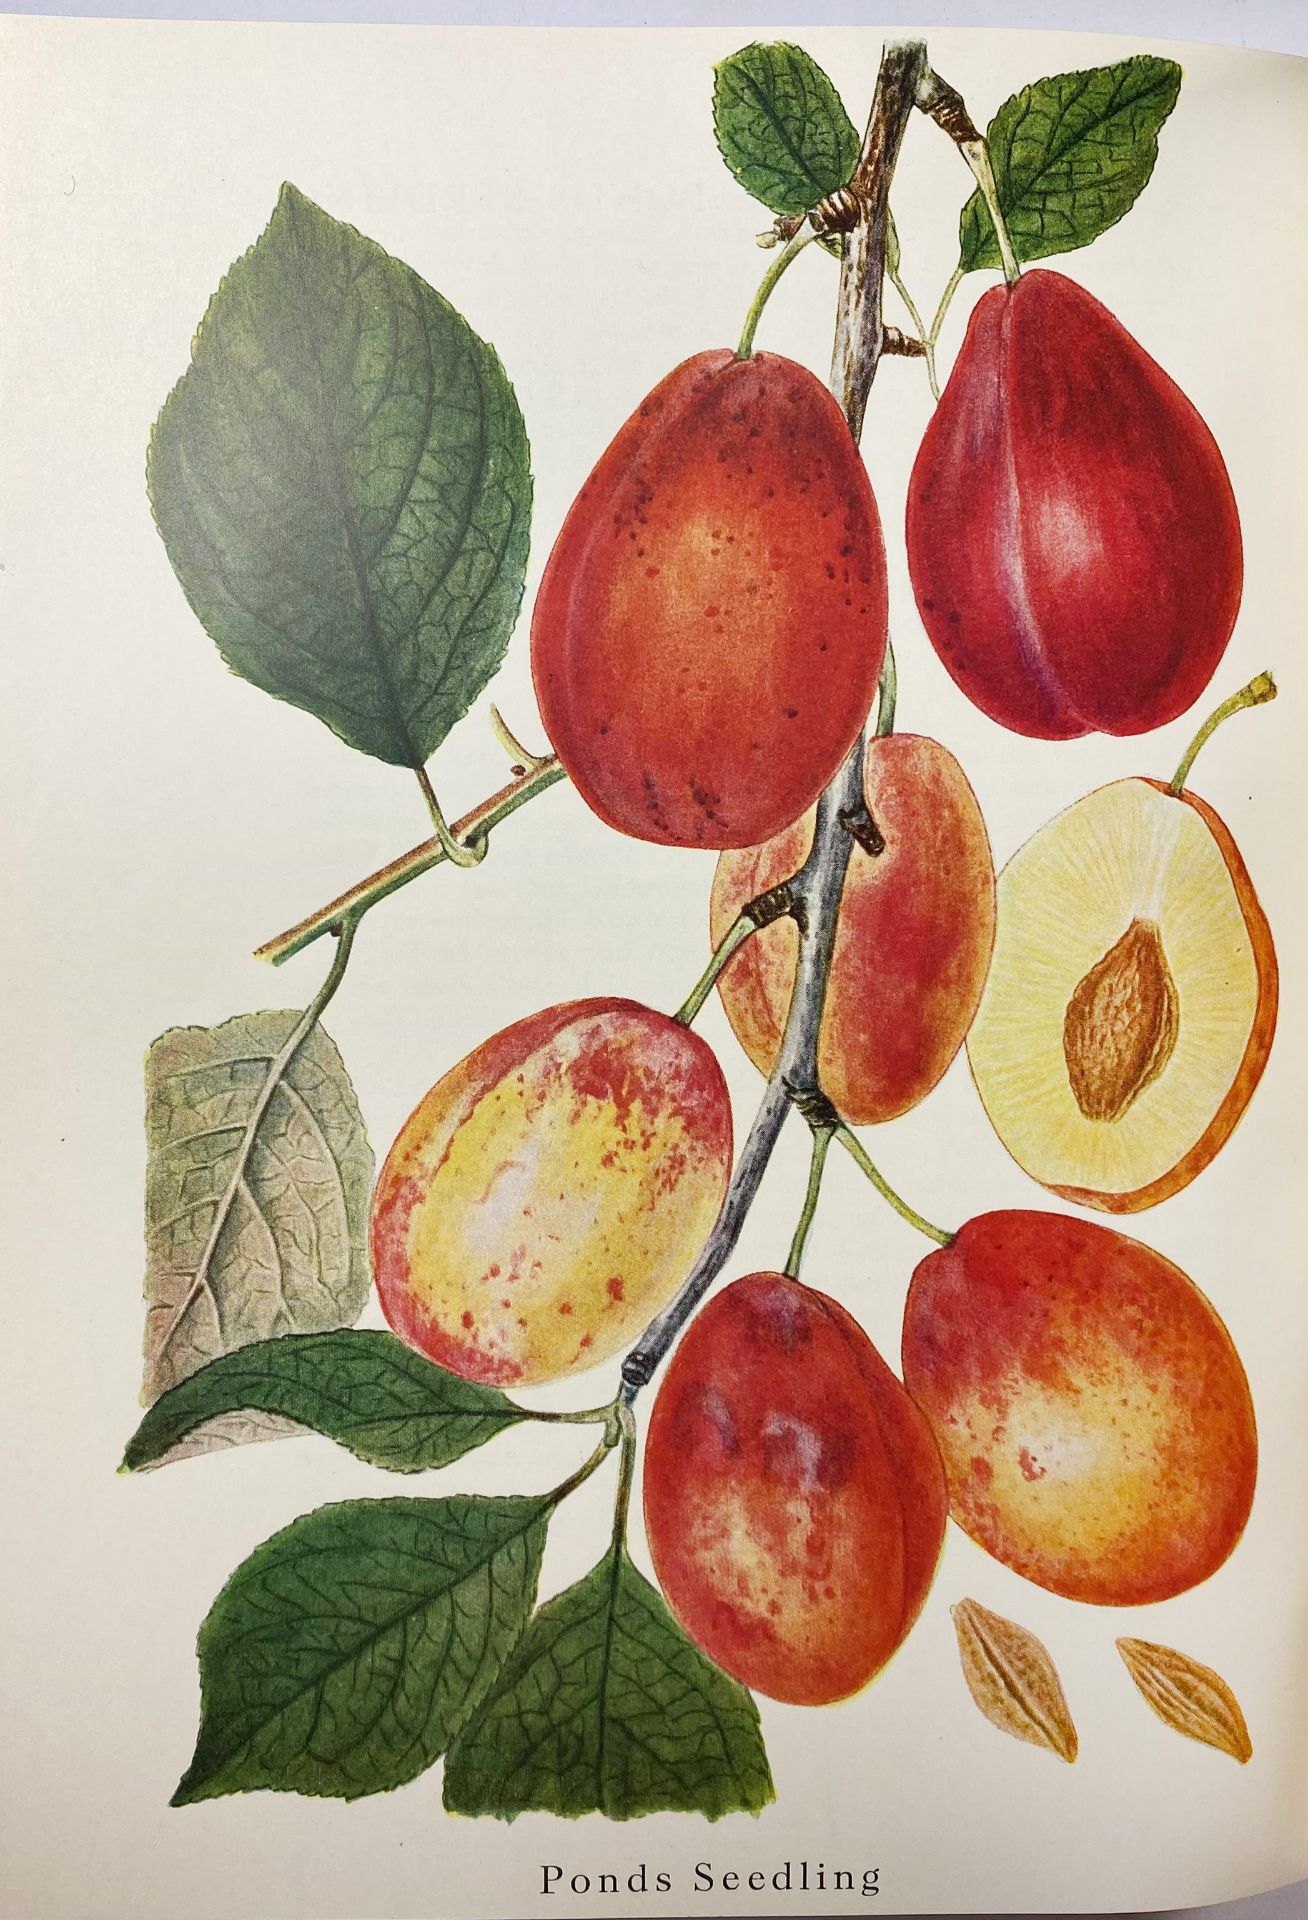 PEDERSEN, A. Danmarks frugtsorter. I: Æbler. II: Pærer, Blommer, Kirsebær. (1950-)55 - Bild 2 aus 3